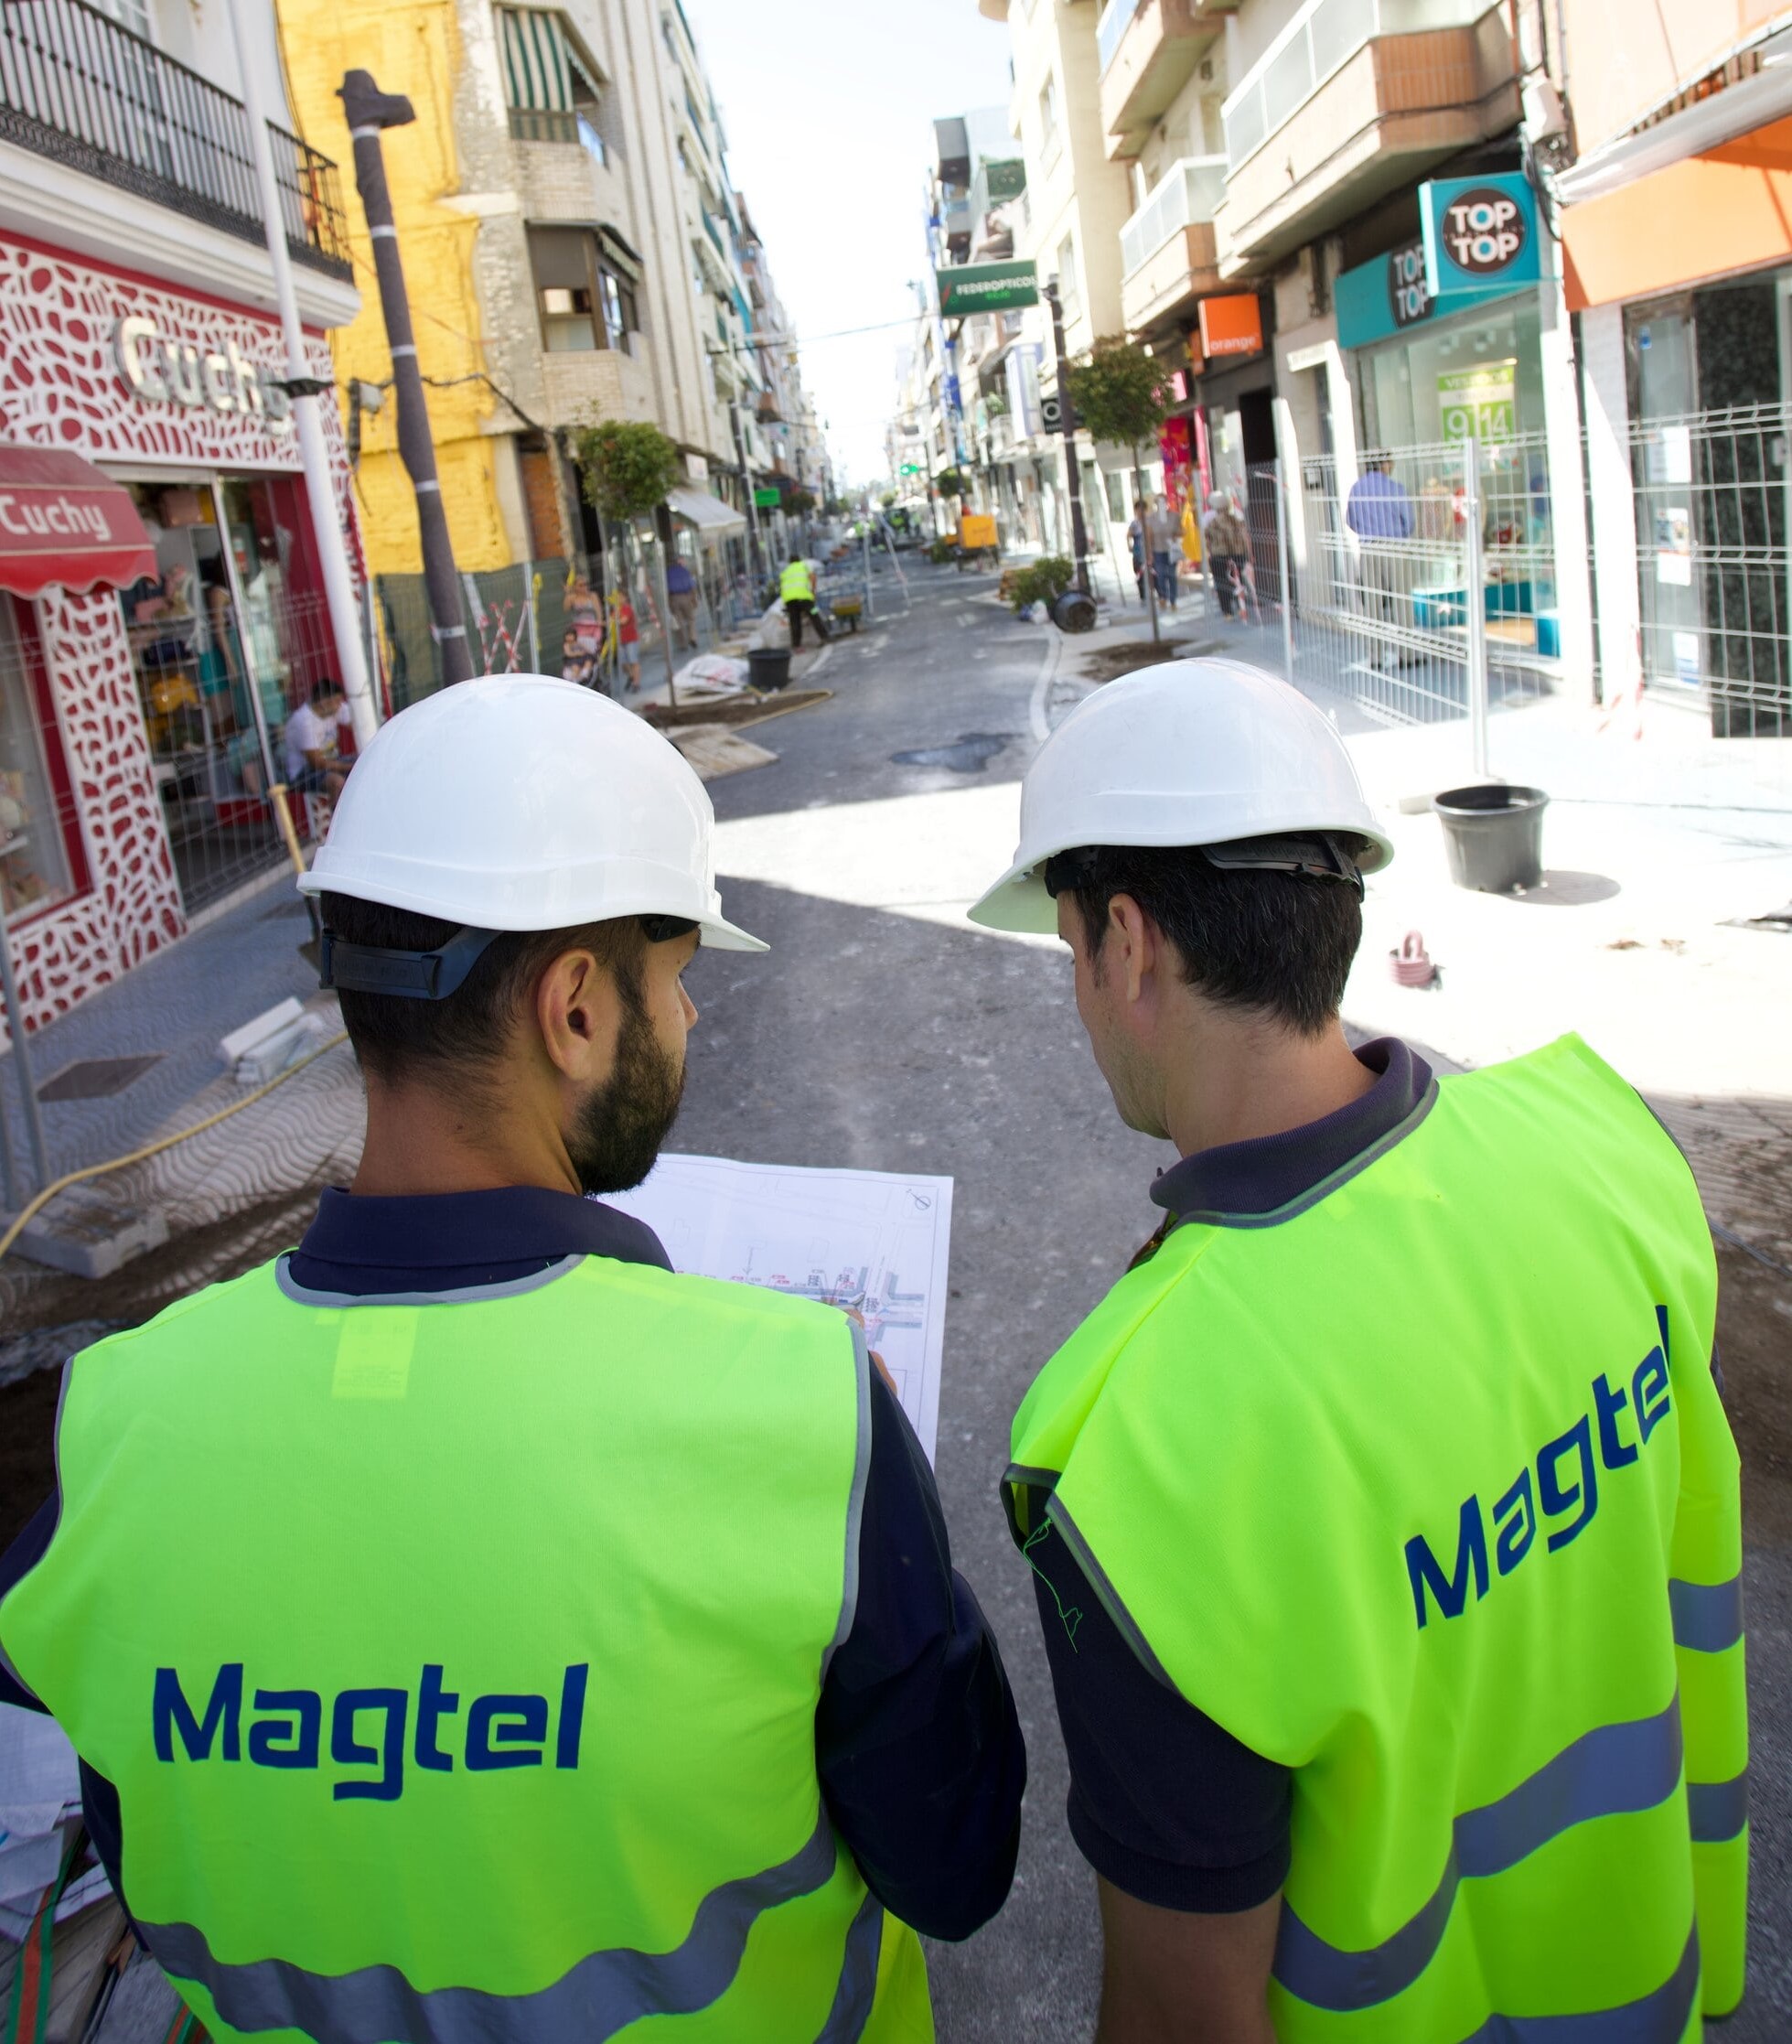 Magtel inicia las obras de regeneración urbana en la barriada de San Francisco de Palma del Río - Magtel